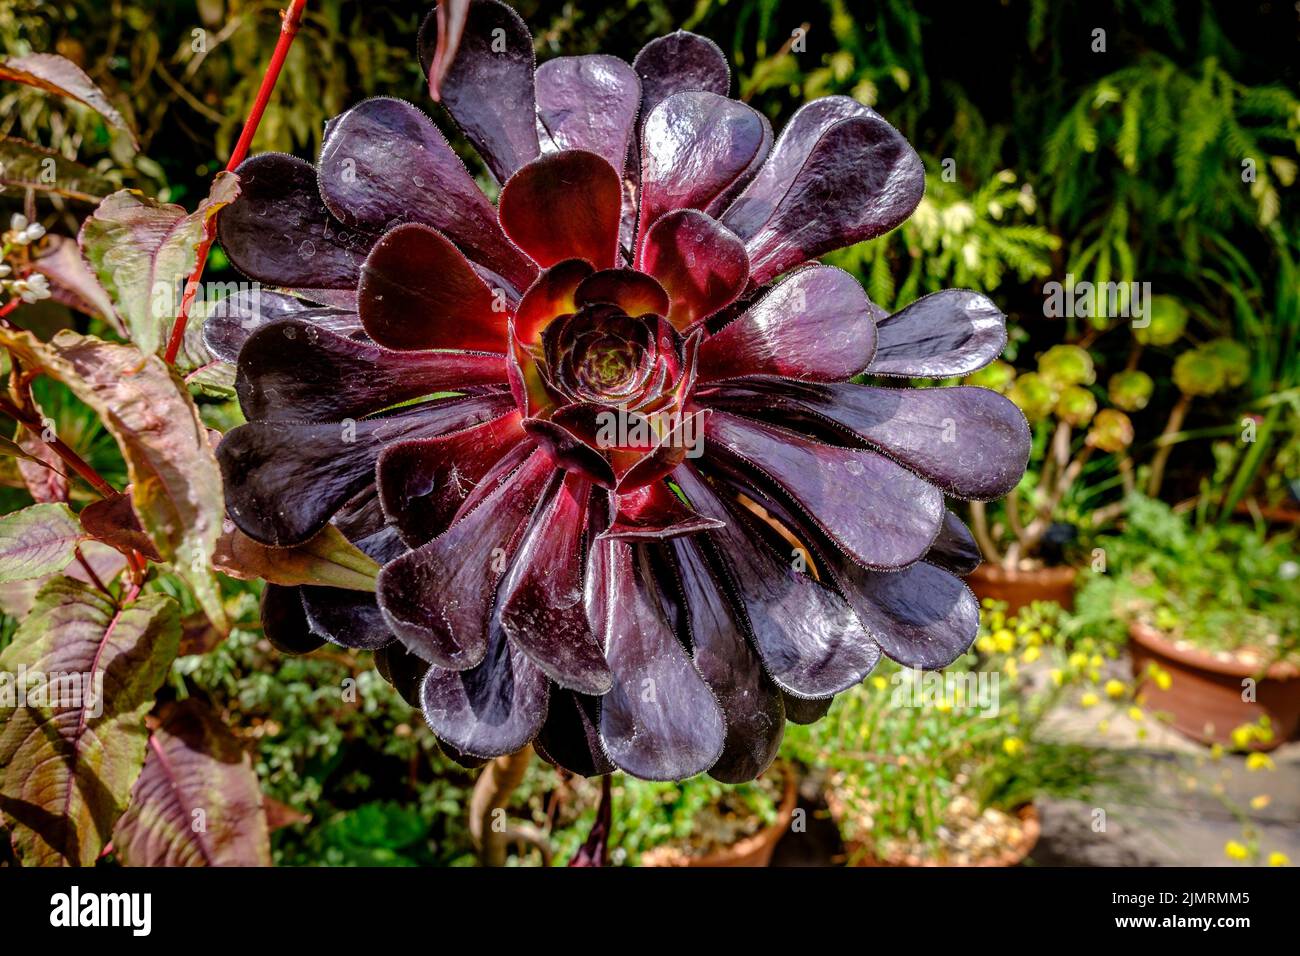 Aeonium Arboreum ‘Zwartkop’ (Black Rose) succulent Stock Photo